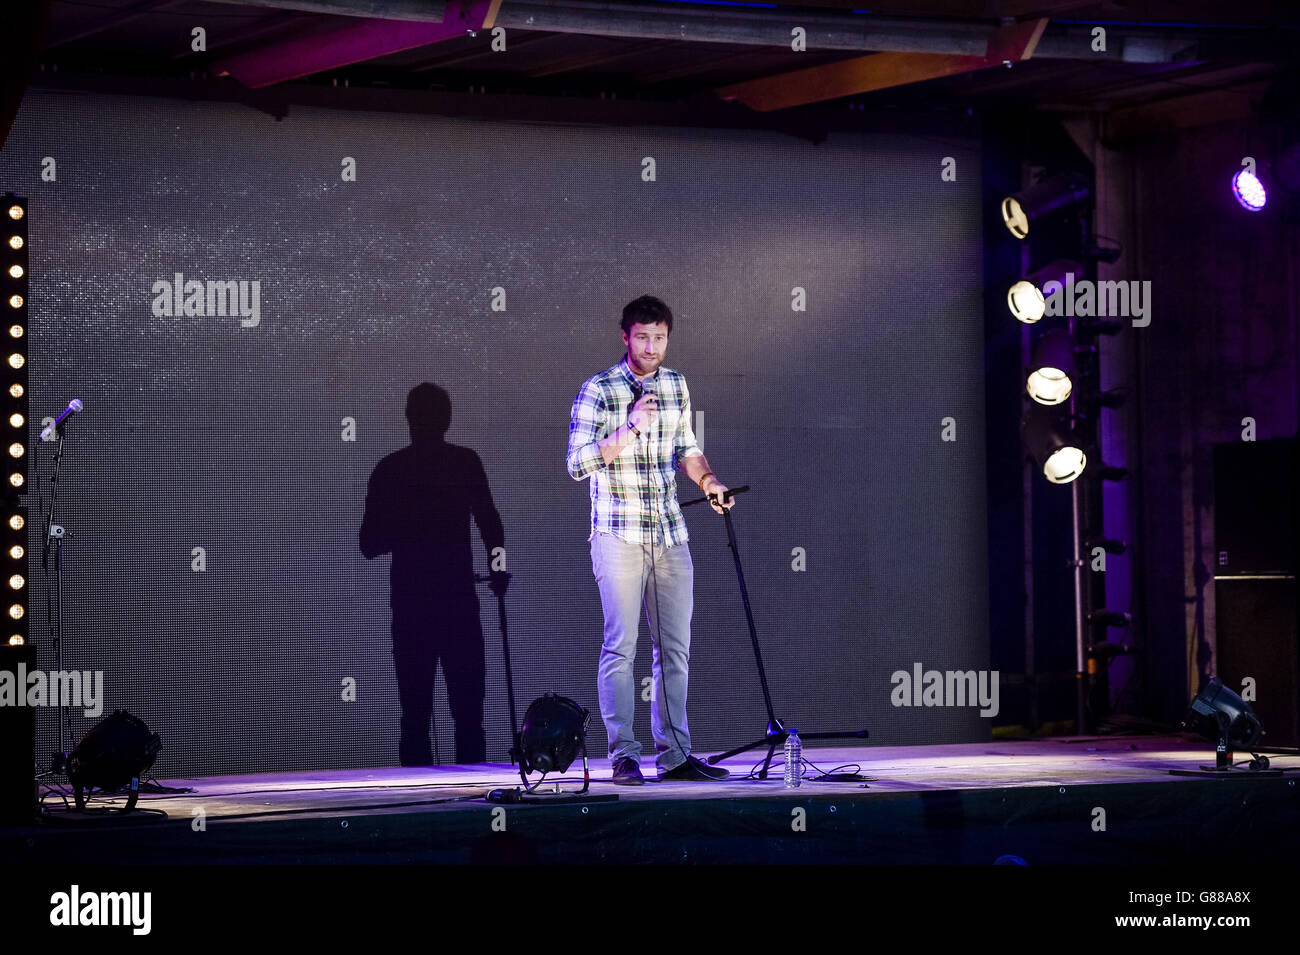 Il comico Andrew Bird suona durante una serata di commedia al parco a tema Banksy's Dismaland di Weston-super-Mare. Foto Stock